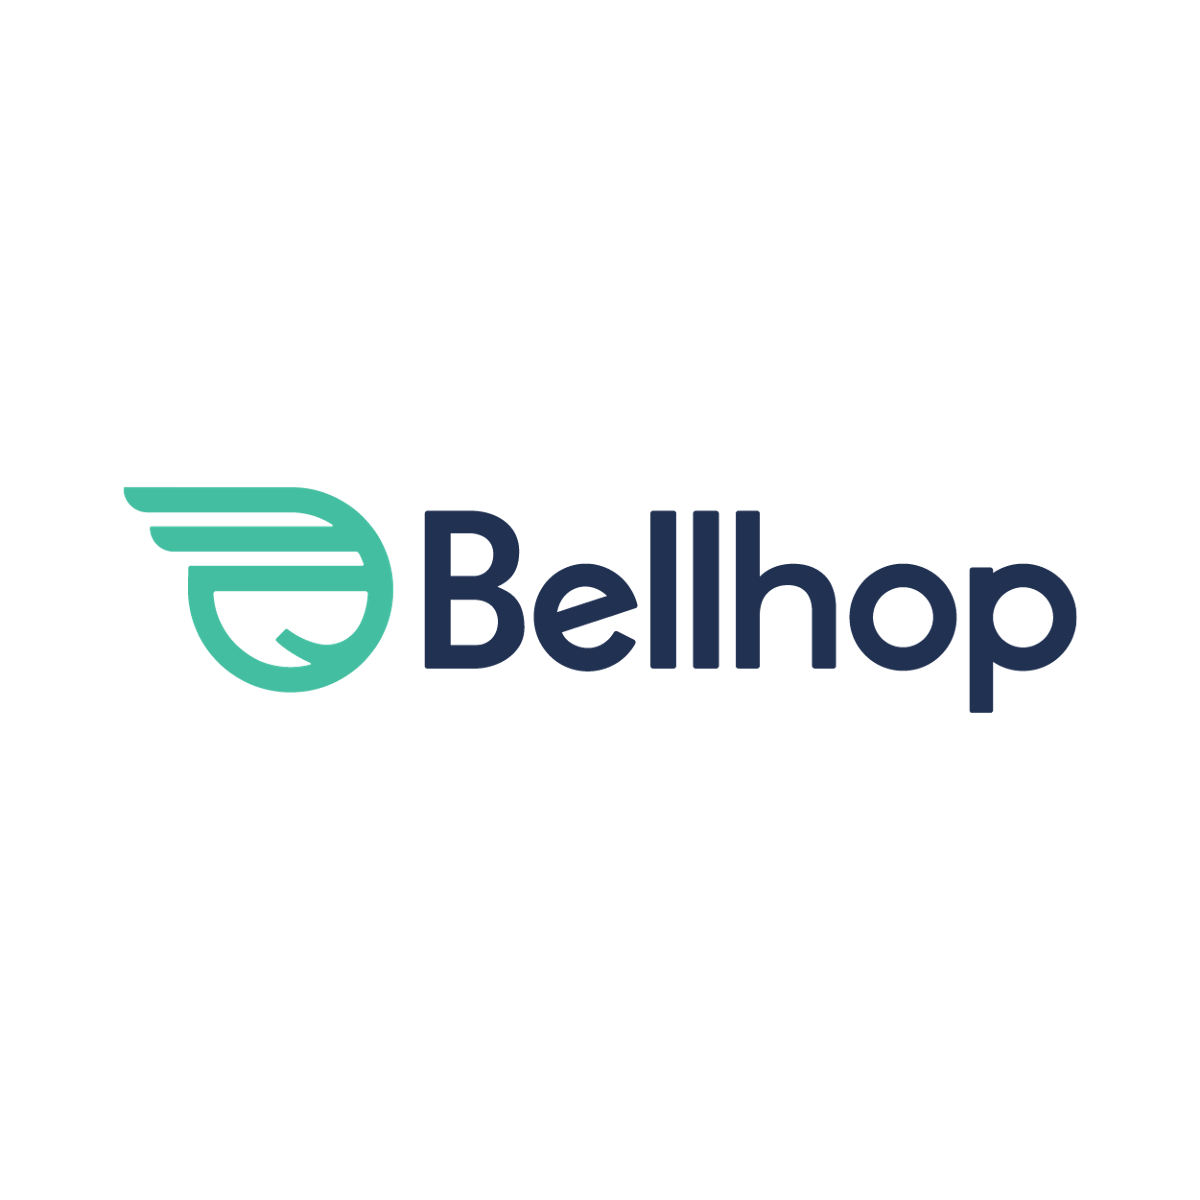 Bellhops Moving logo